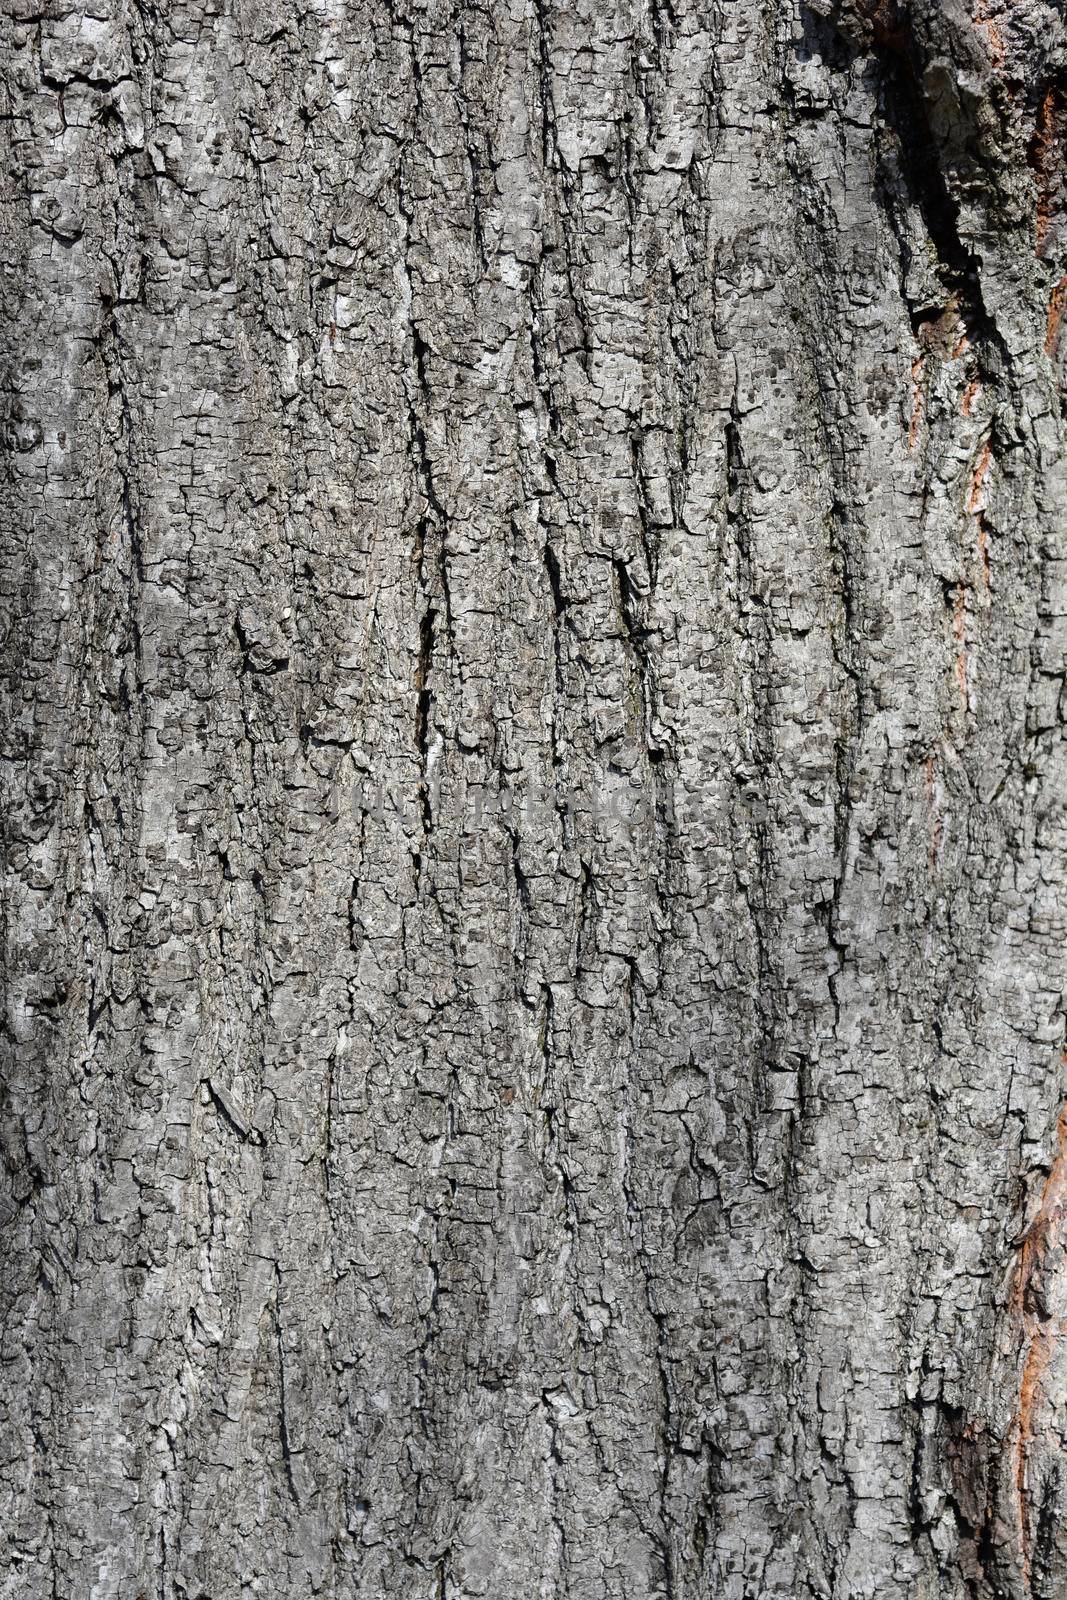 Silver lime bark detail - Latin name - Tilia tomentosa